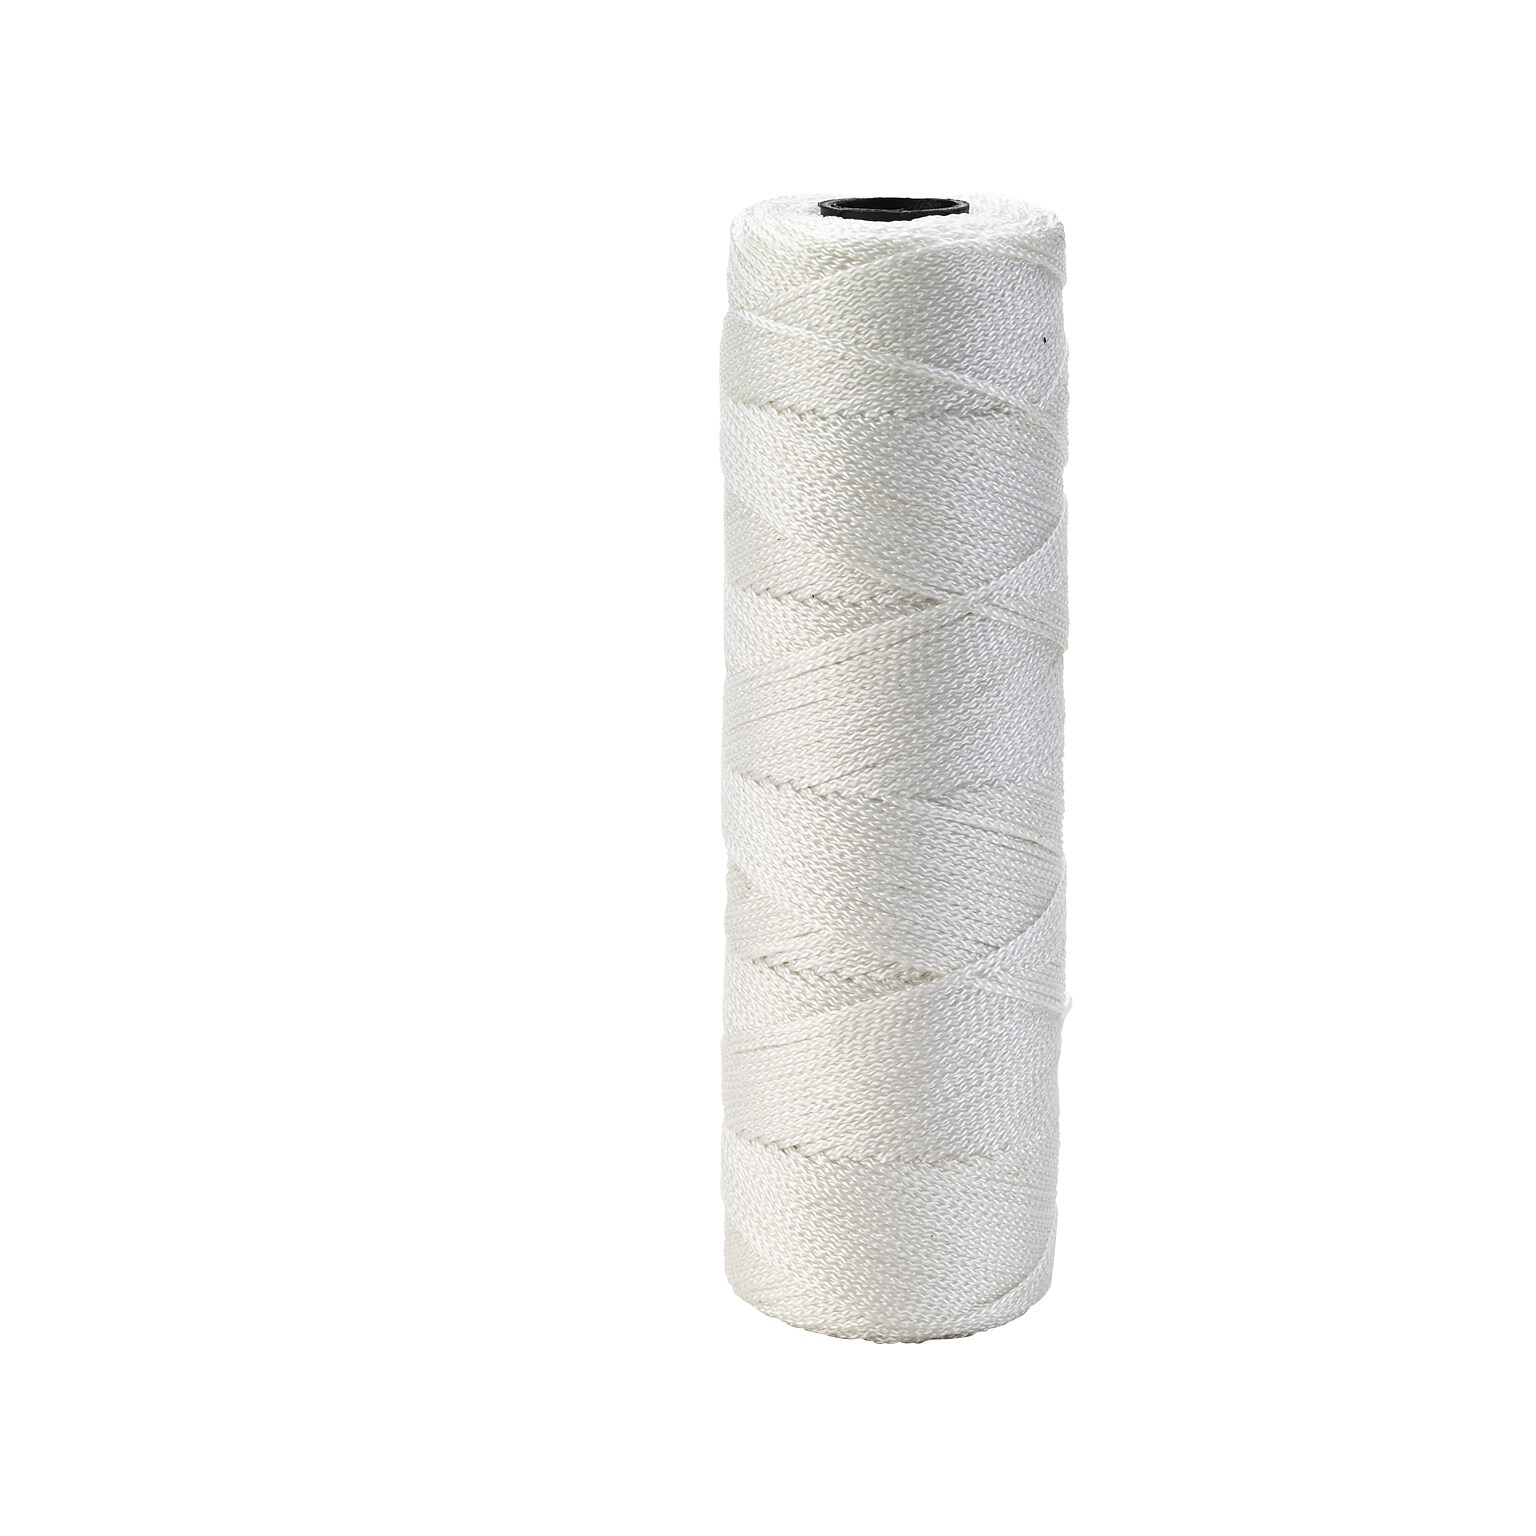 Mutual Industries Nylon Twisted Mason Twine, 0.06 x 275 ft., White, Dozen (14661-10-275)